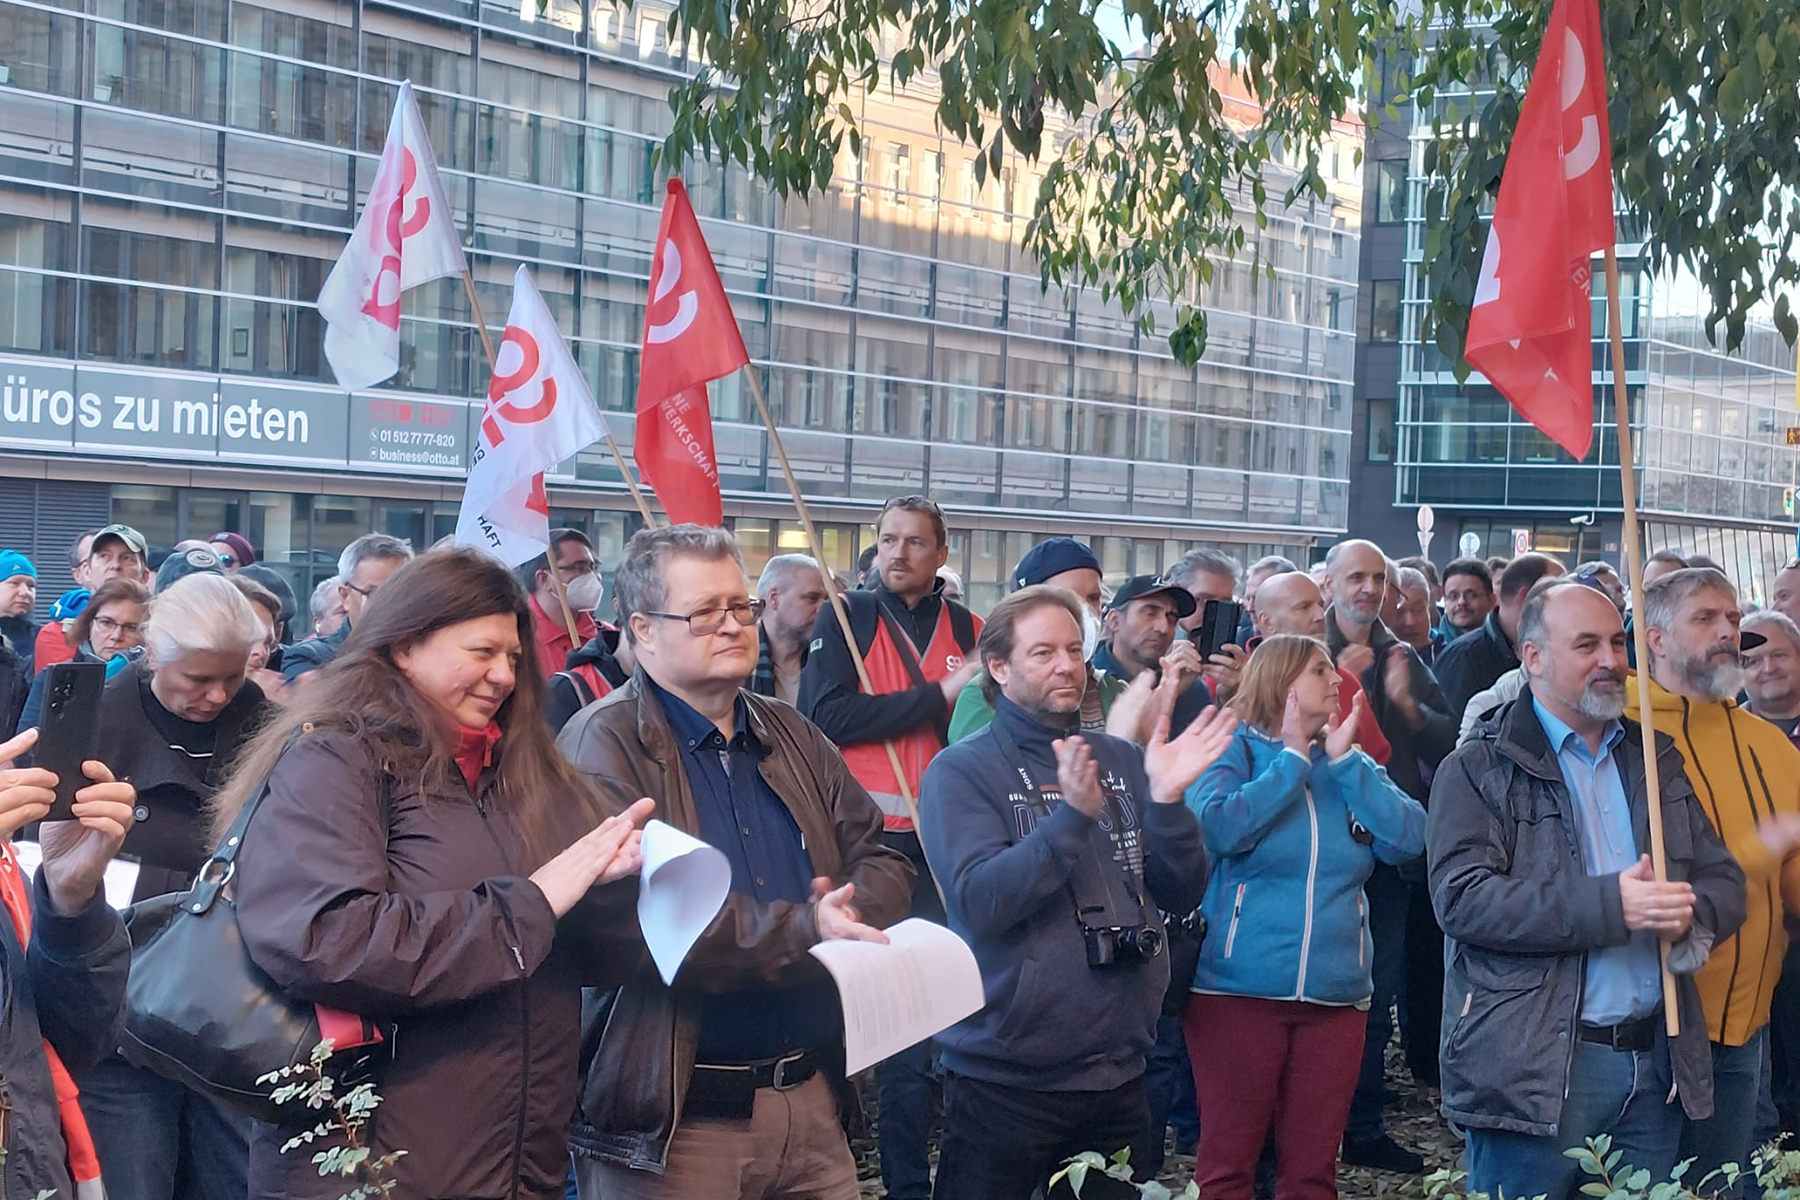 Arbeitgeber verweigern fairen Kollektivvertragsabschluss deshalb stärken Betriebsversammlungen in ganz Österreich das Verhandlungsteam.